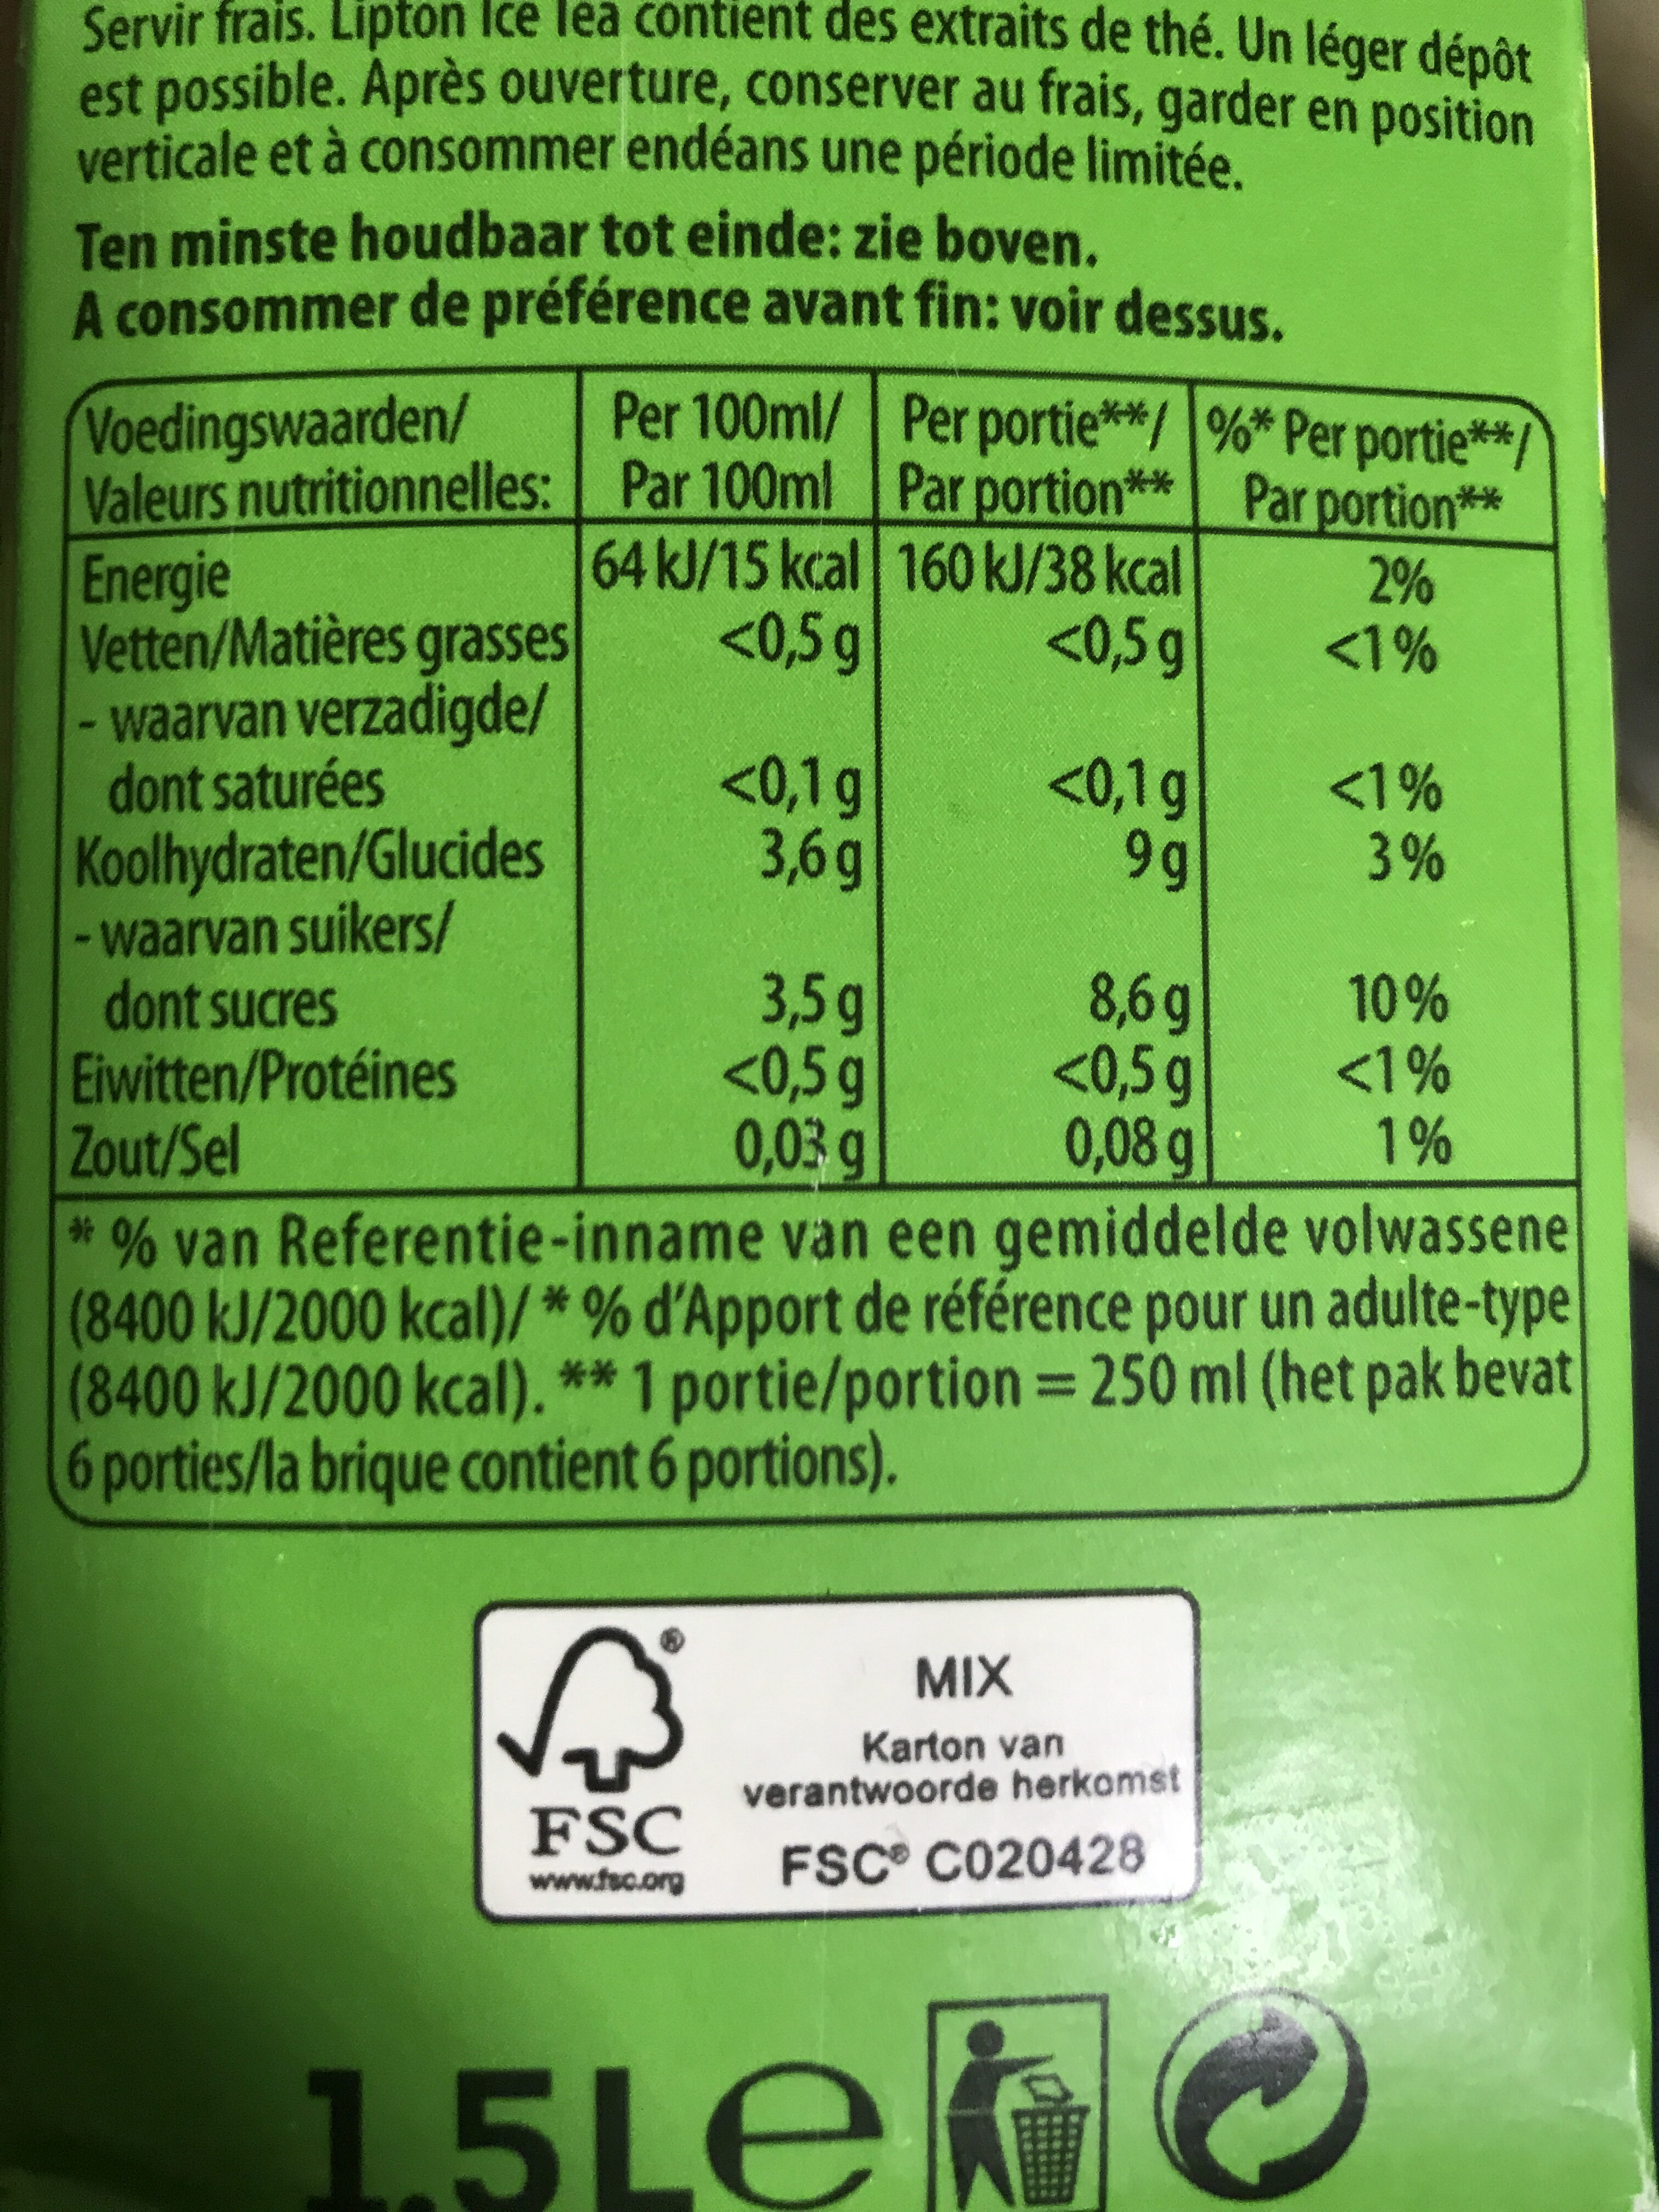 Lipton green ice tea - Voedingswaarden